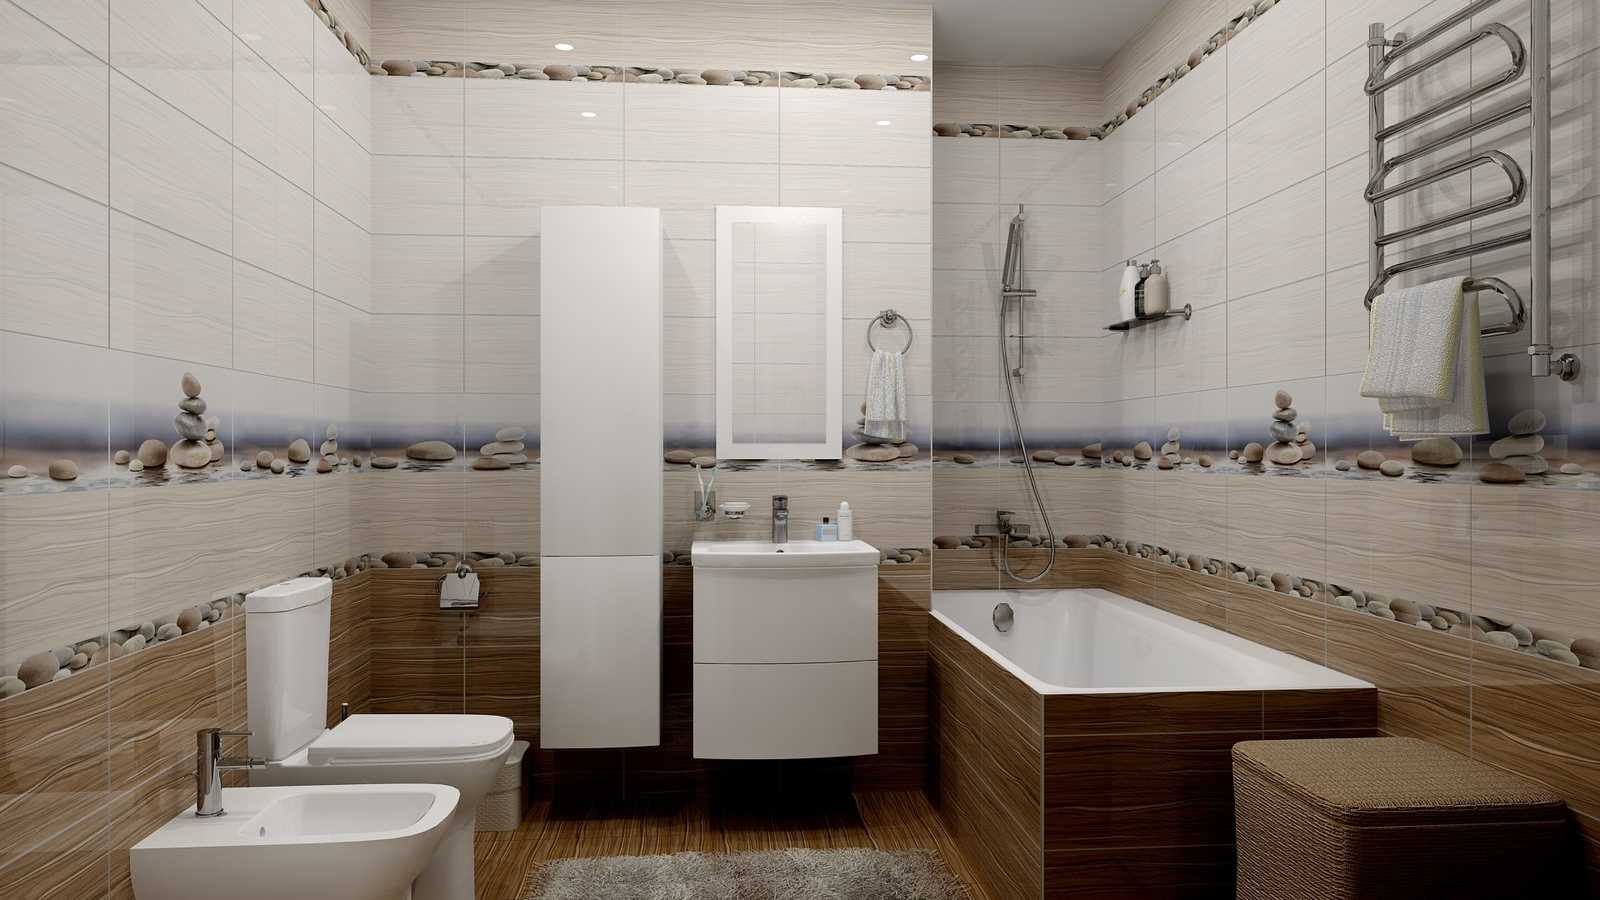 Как выбрать недорогую плитку для ванной комнаты?